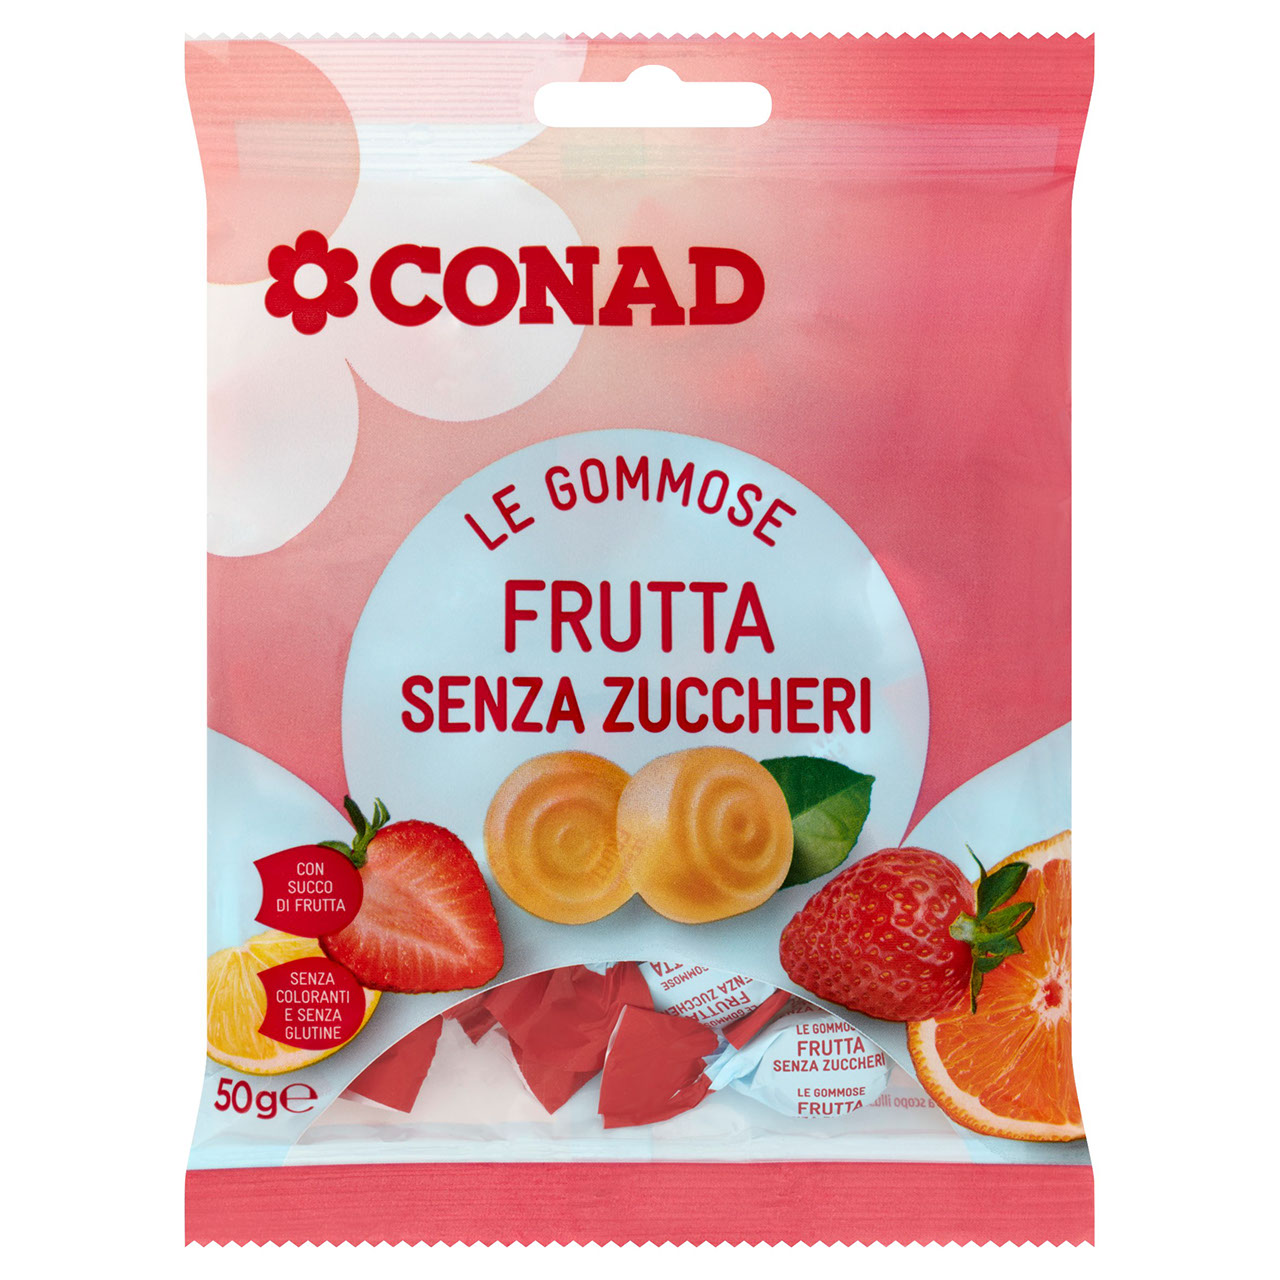 Le Gommose Frutta Senza Zuccheri 50 g Conad online